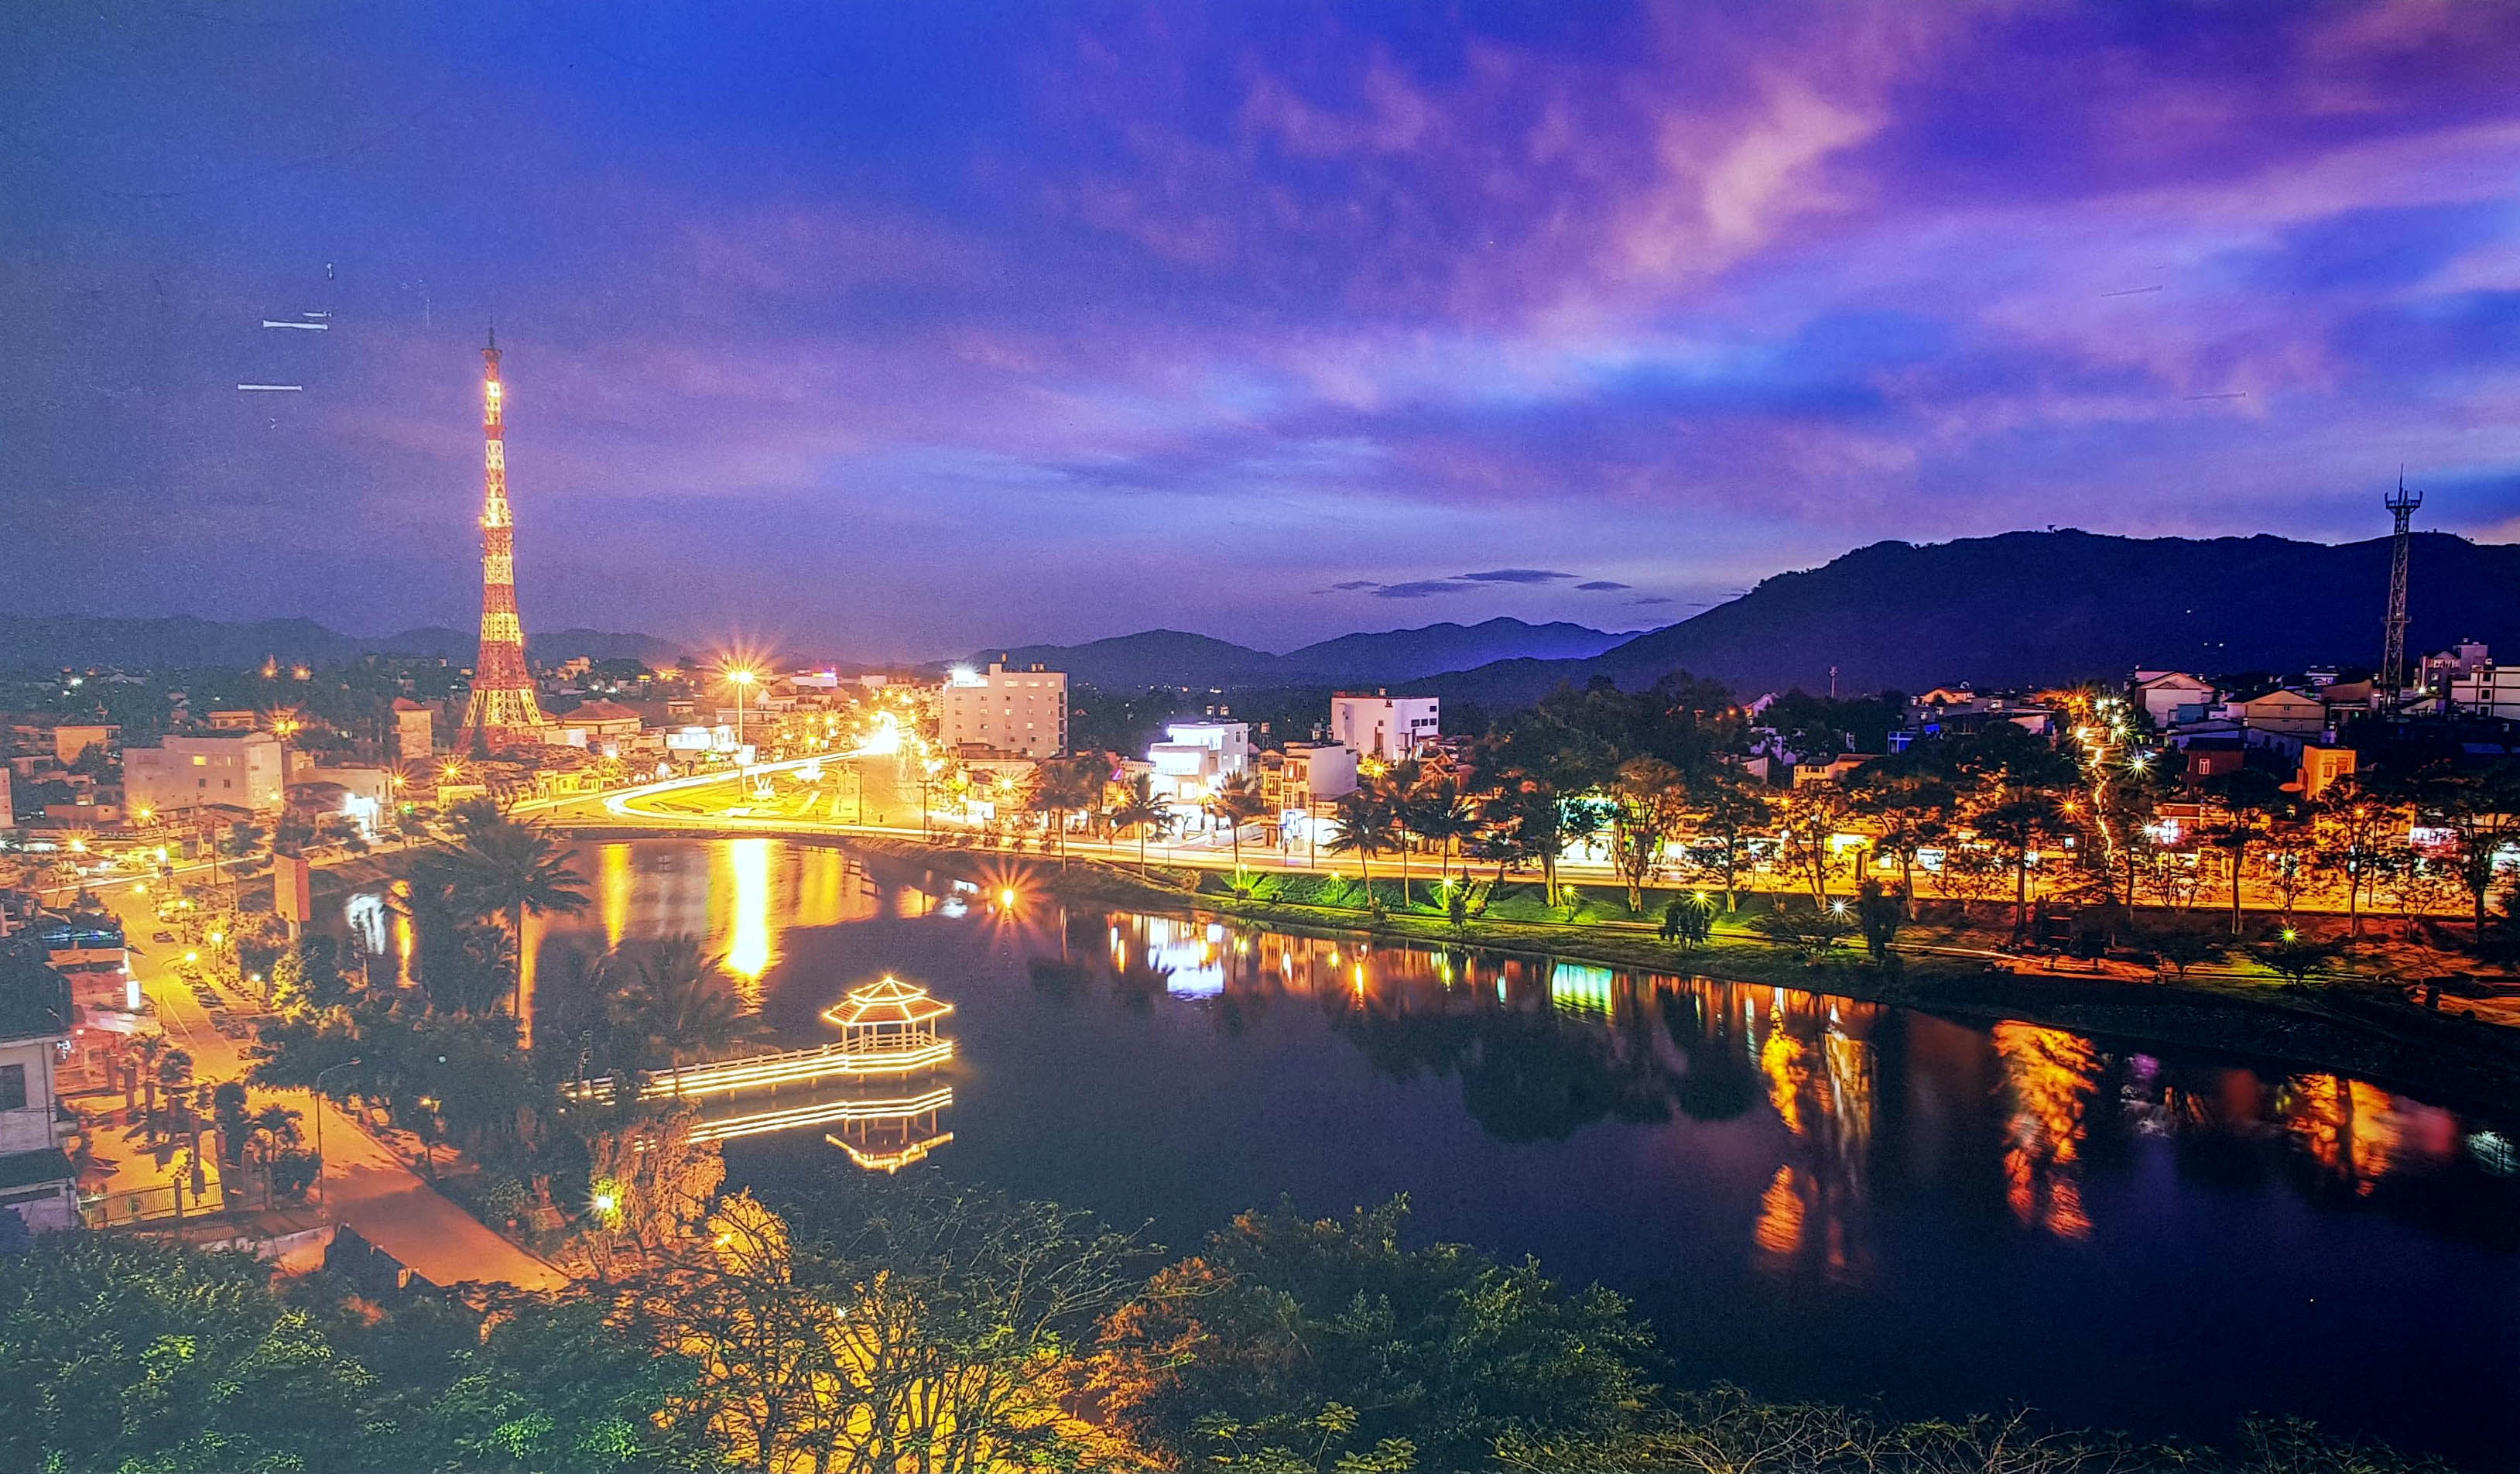 Trung tâm thành phố Bảo Lộc về đêm lung linh sắc màu